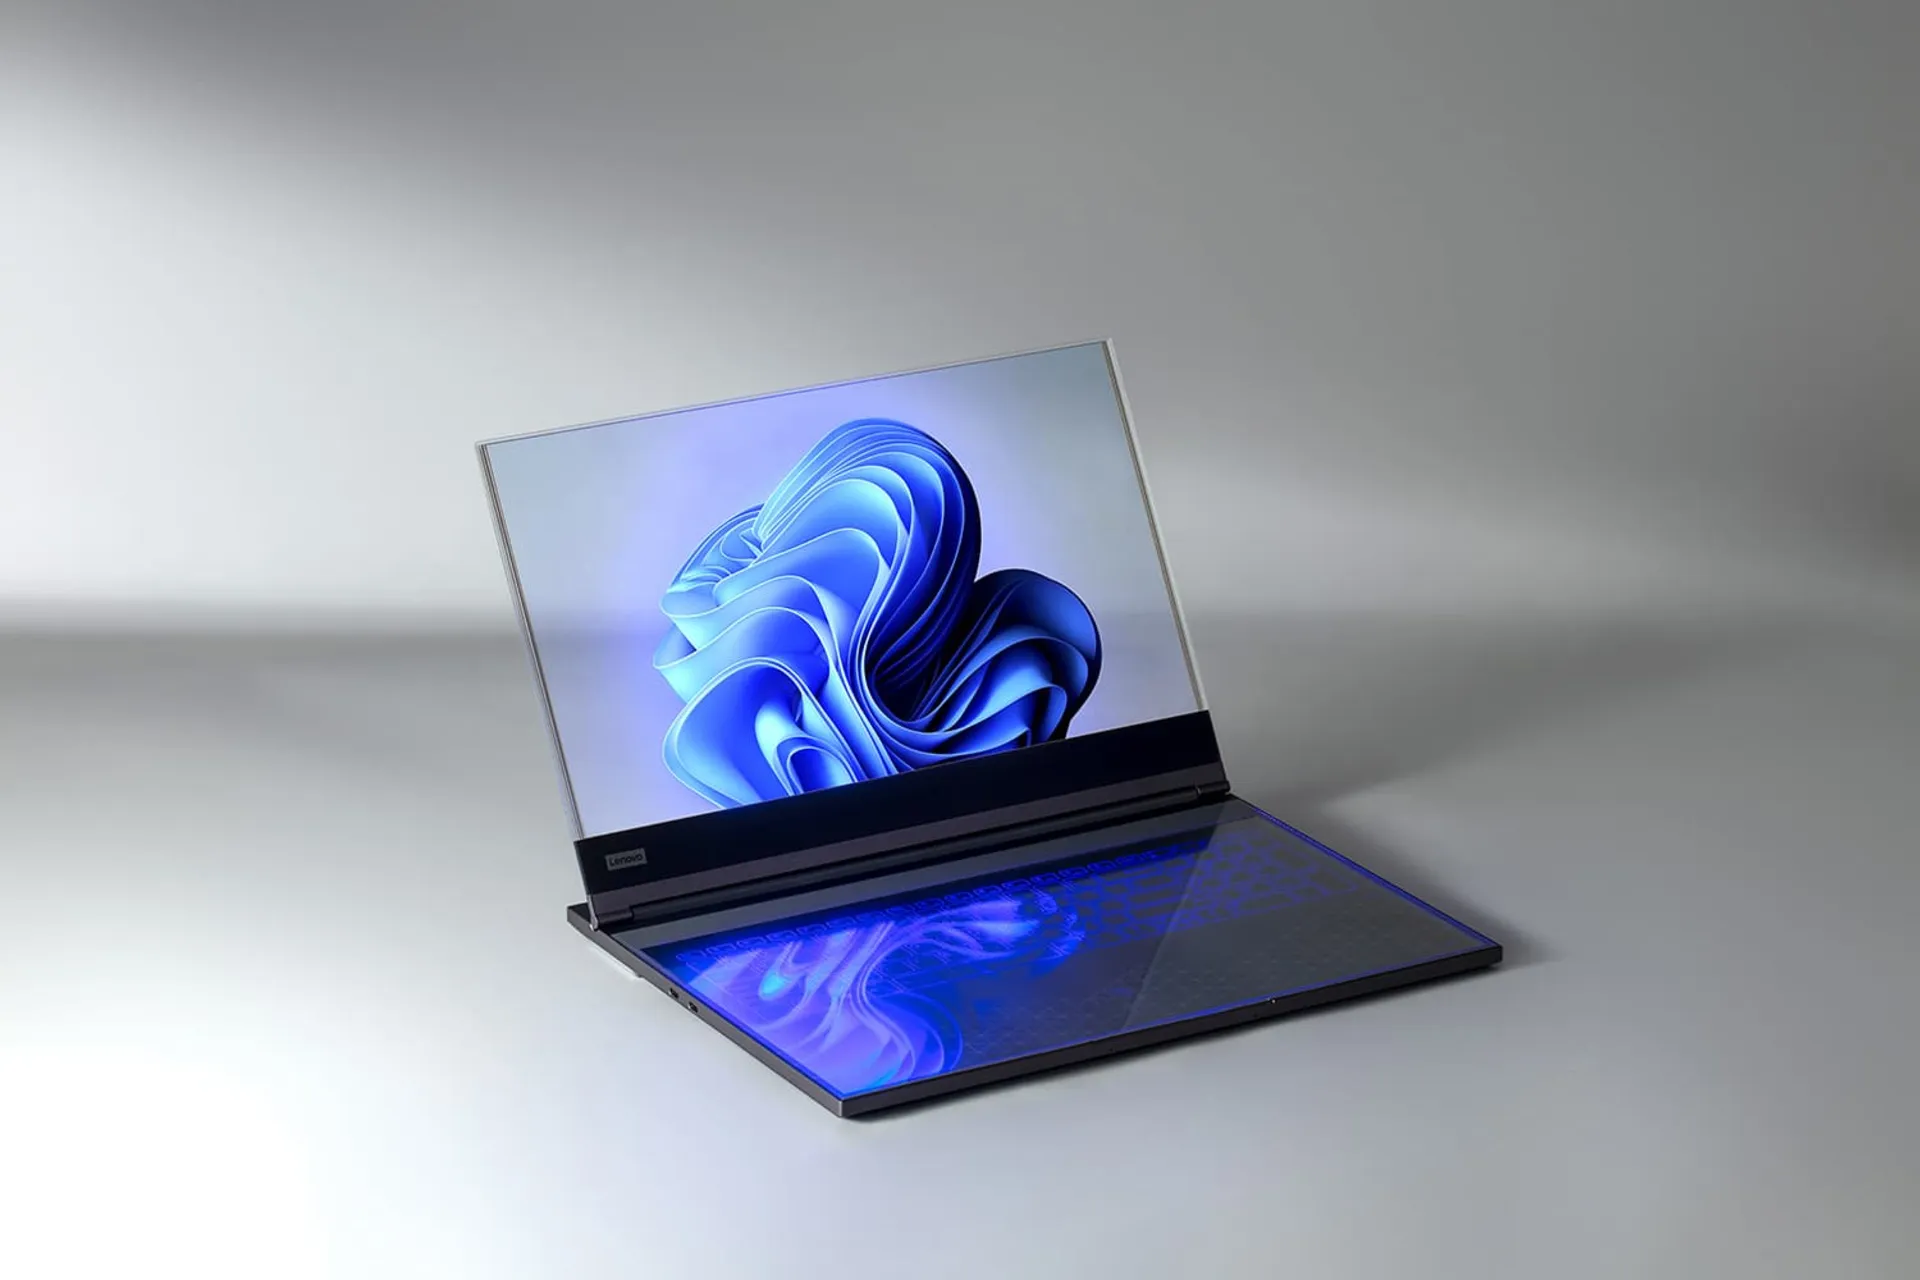 لپ تاپ شفاف لنوو Lenovo از نمای جلو روی میز